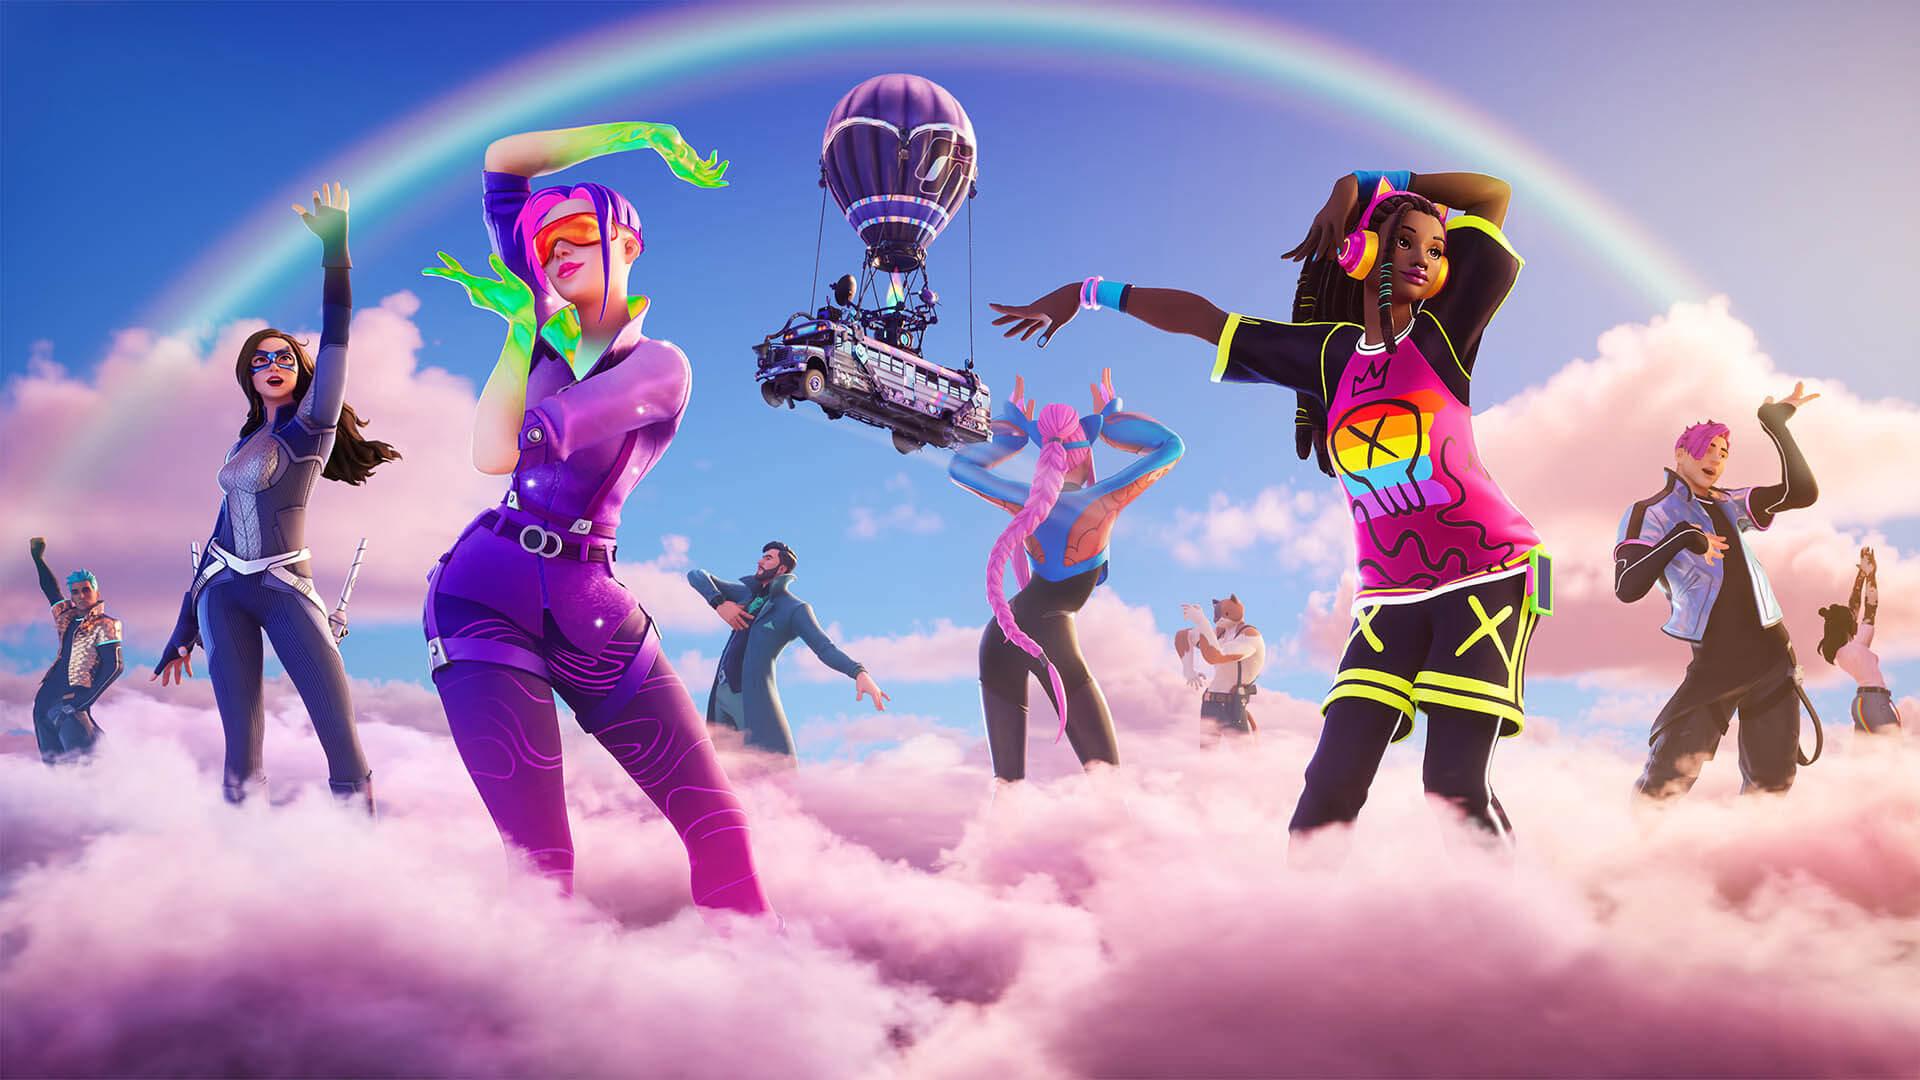 以彩虹为主题的头像在粉红色的云朵上翩翩起舞的宣传艺术。